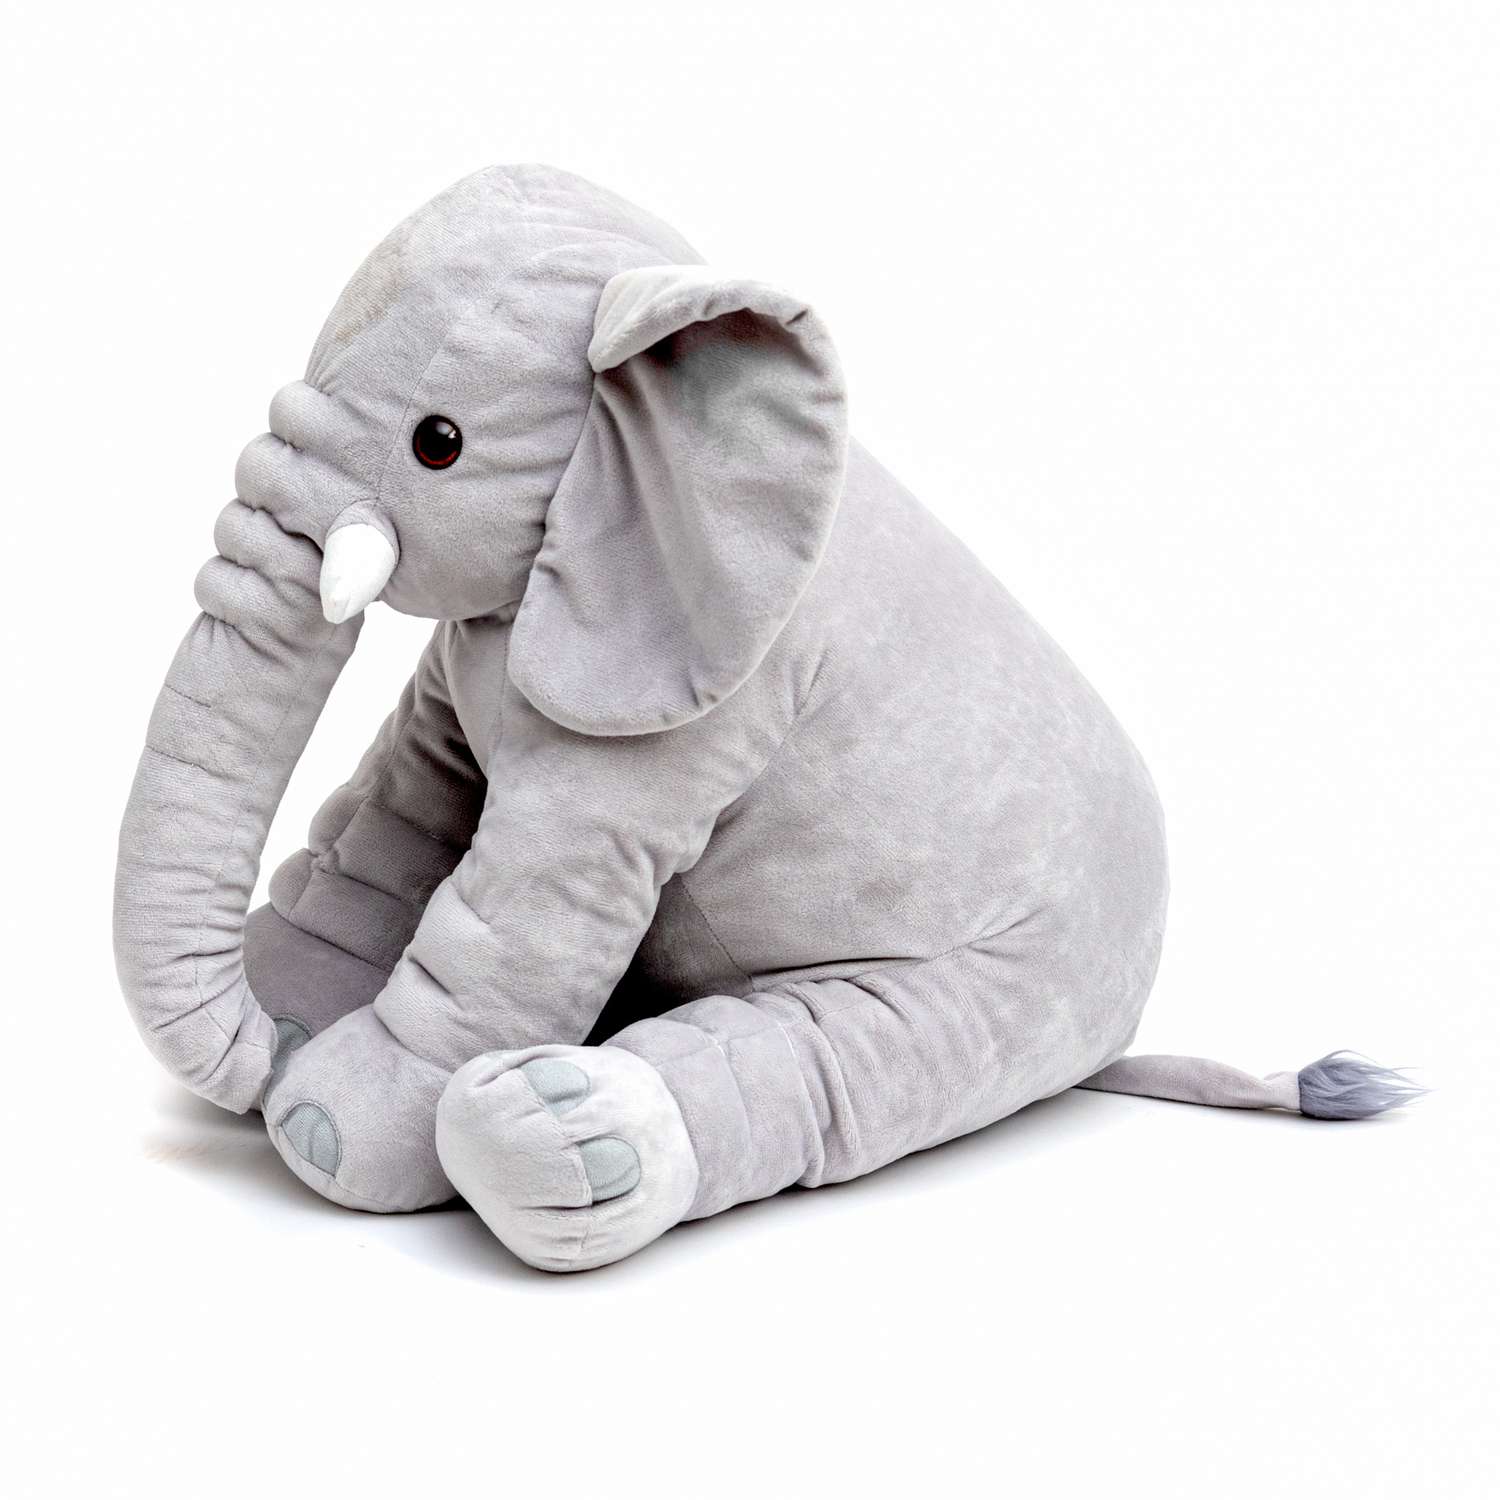 Мягкая игрушка Нижегородская игрушка Слон серый - фото 3